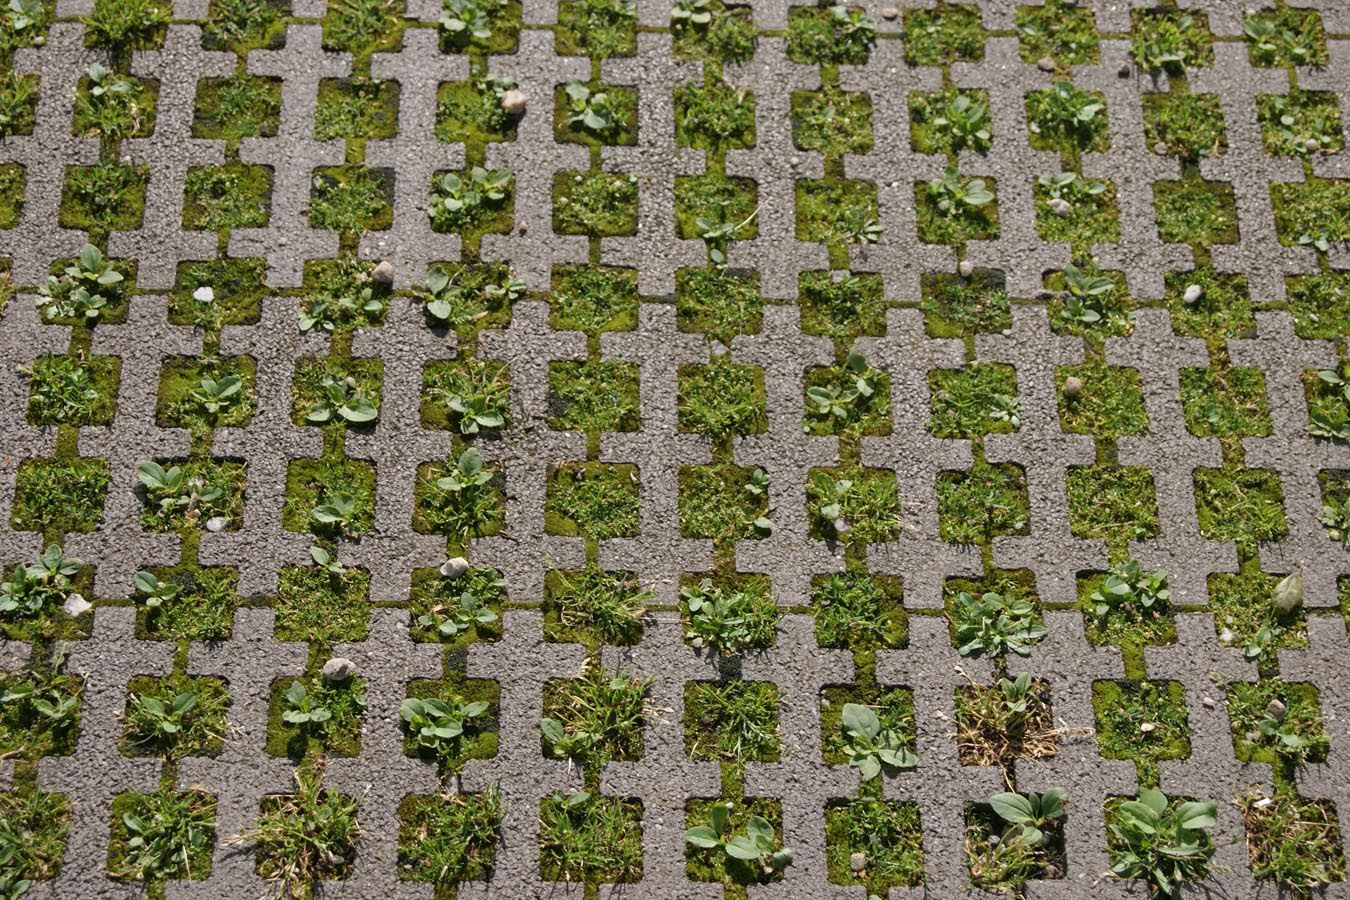 durchlässige Betonplatte mit quadratischen Löchern, in denen Gras wächst